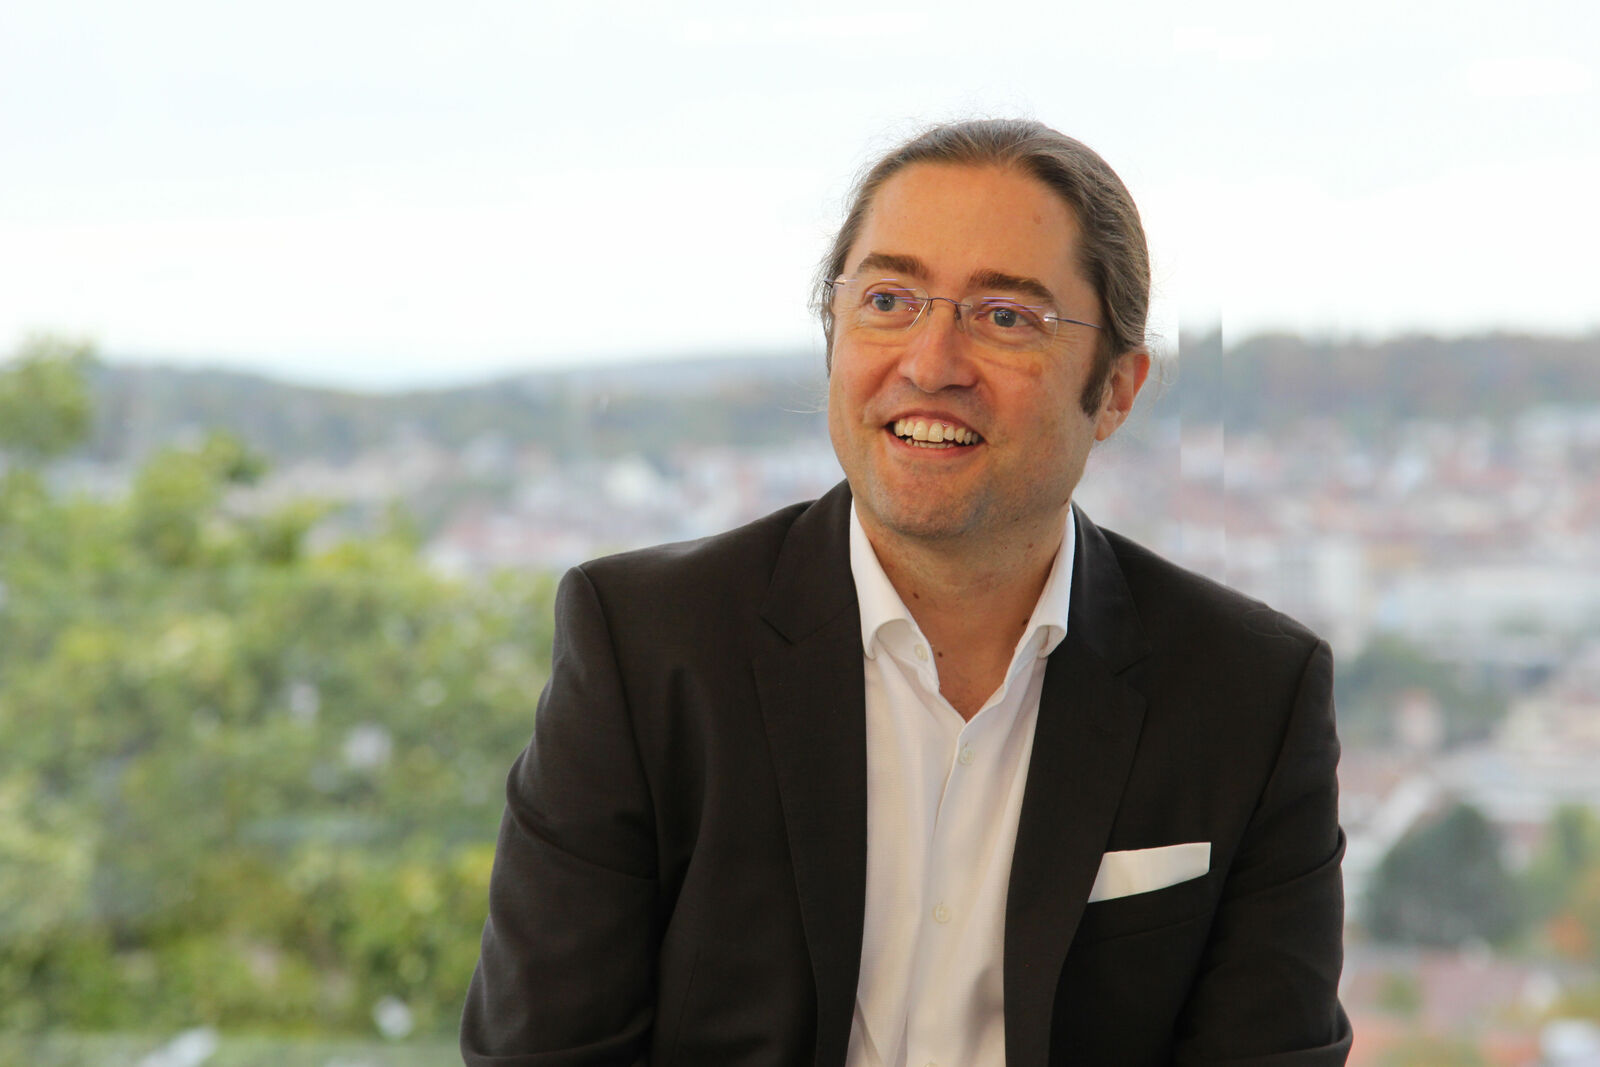 Fernando Fastoso, Leiter Lehrstuhl für Luxus und hochwertige Marken, Hochschule Pforzheim